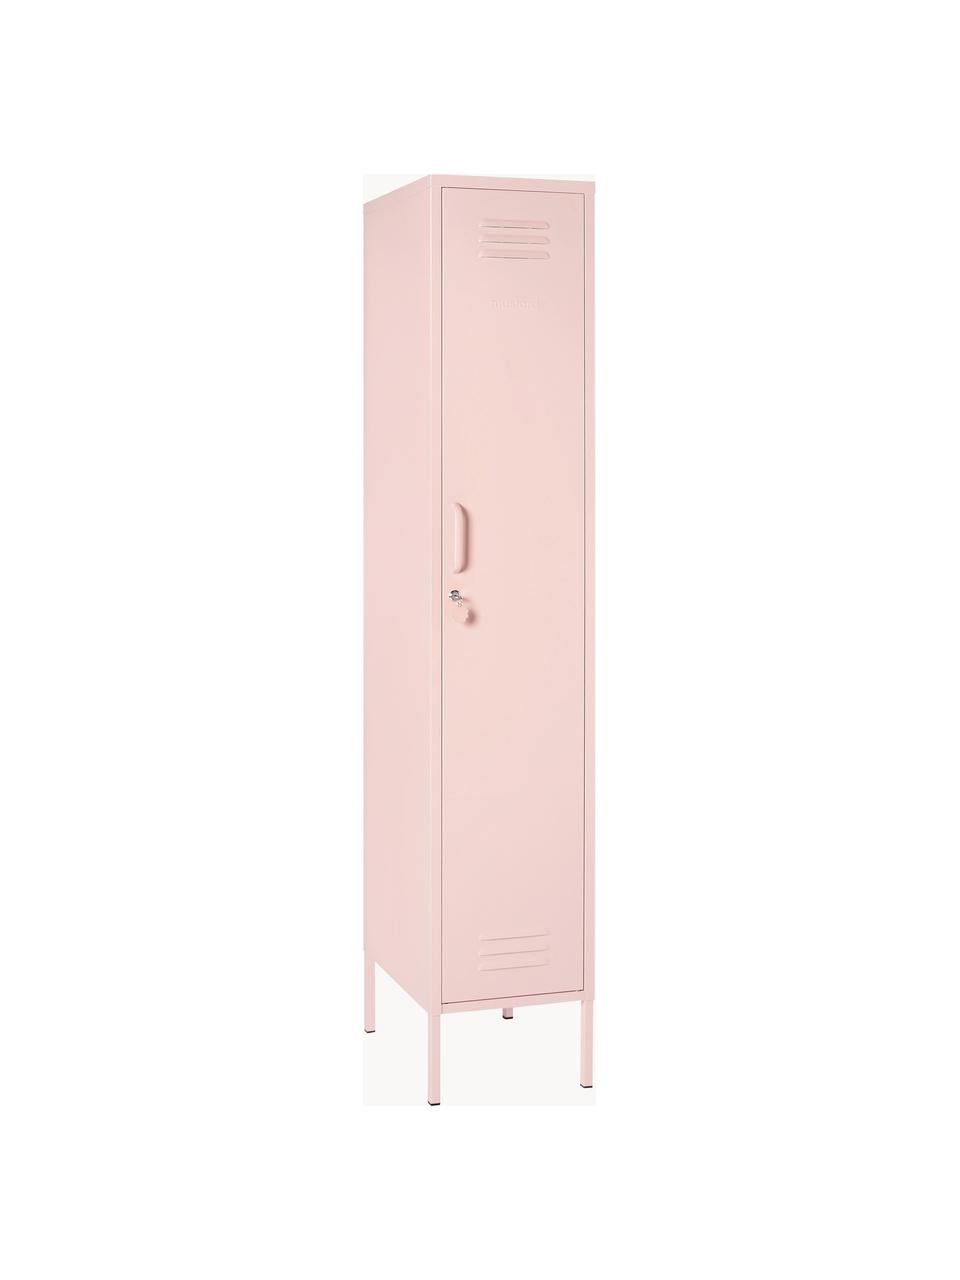 Petite armoire The Skinny, Acier, revêtement par poudre, Rose pâle, larg. 35 x haut. 183 cm